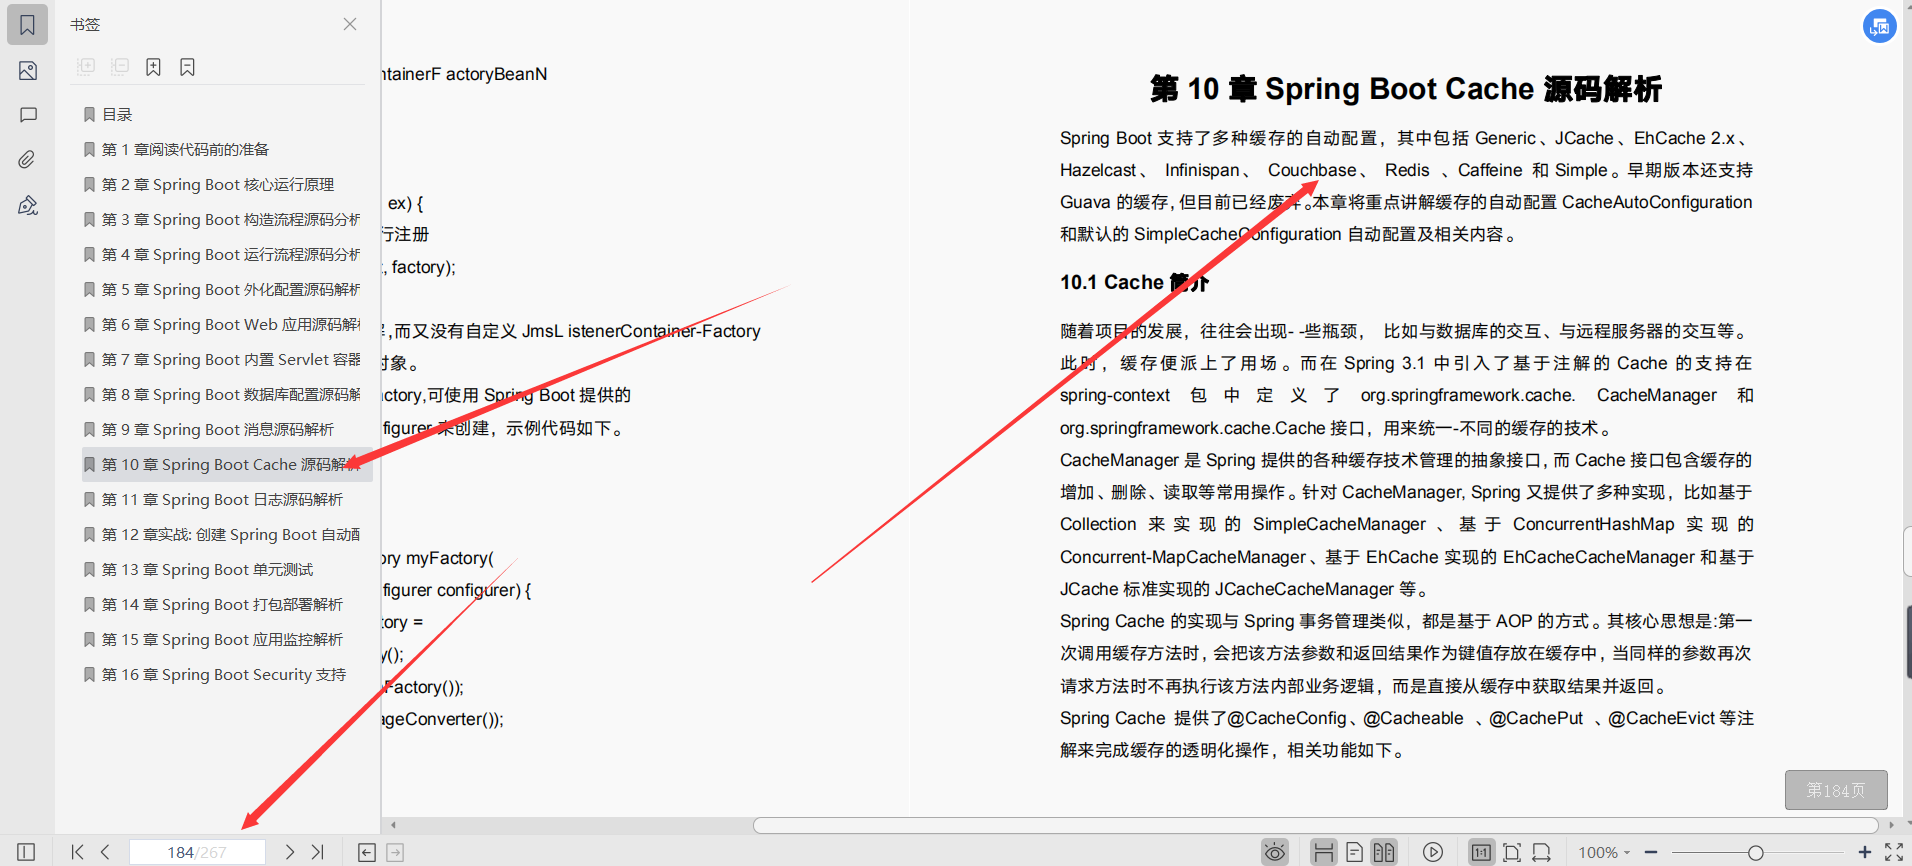 阿里资深架构师推荐内部学习的SpringBoot技术内幕文档